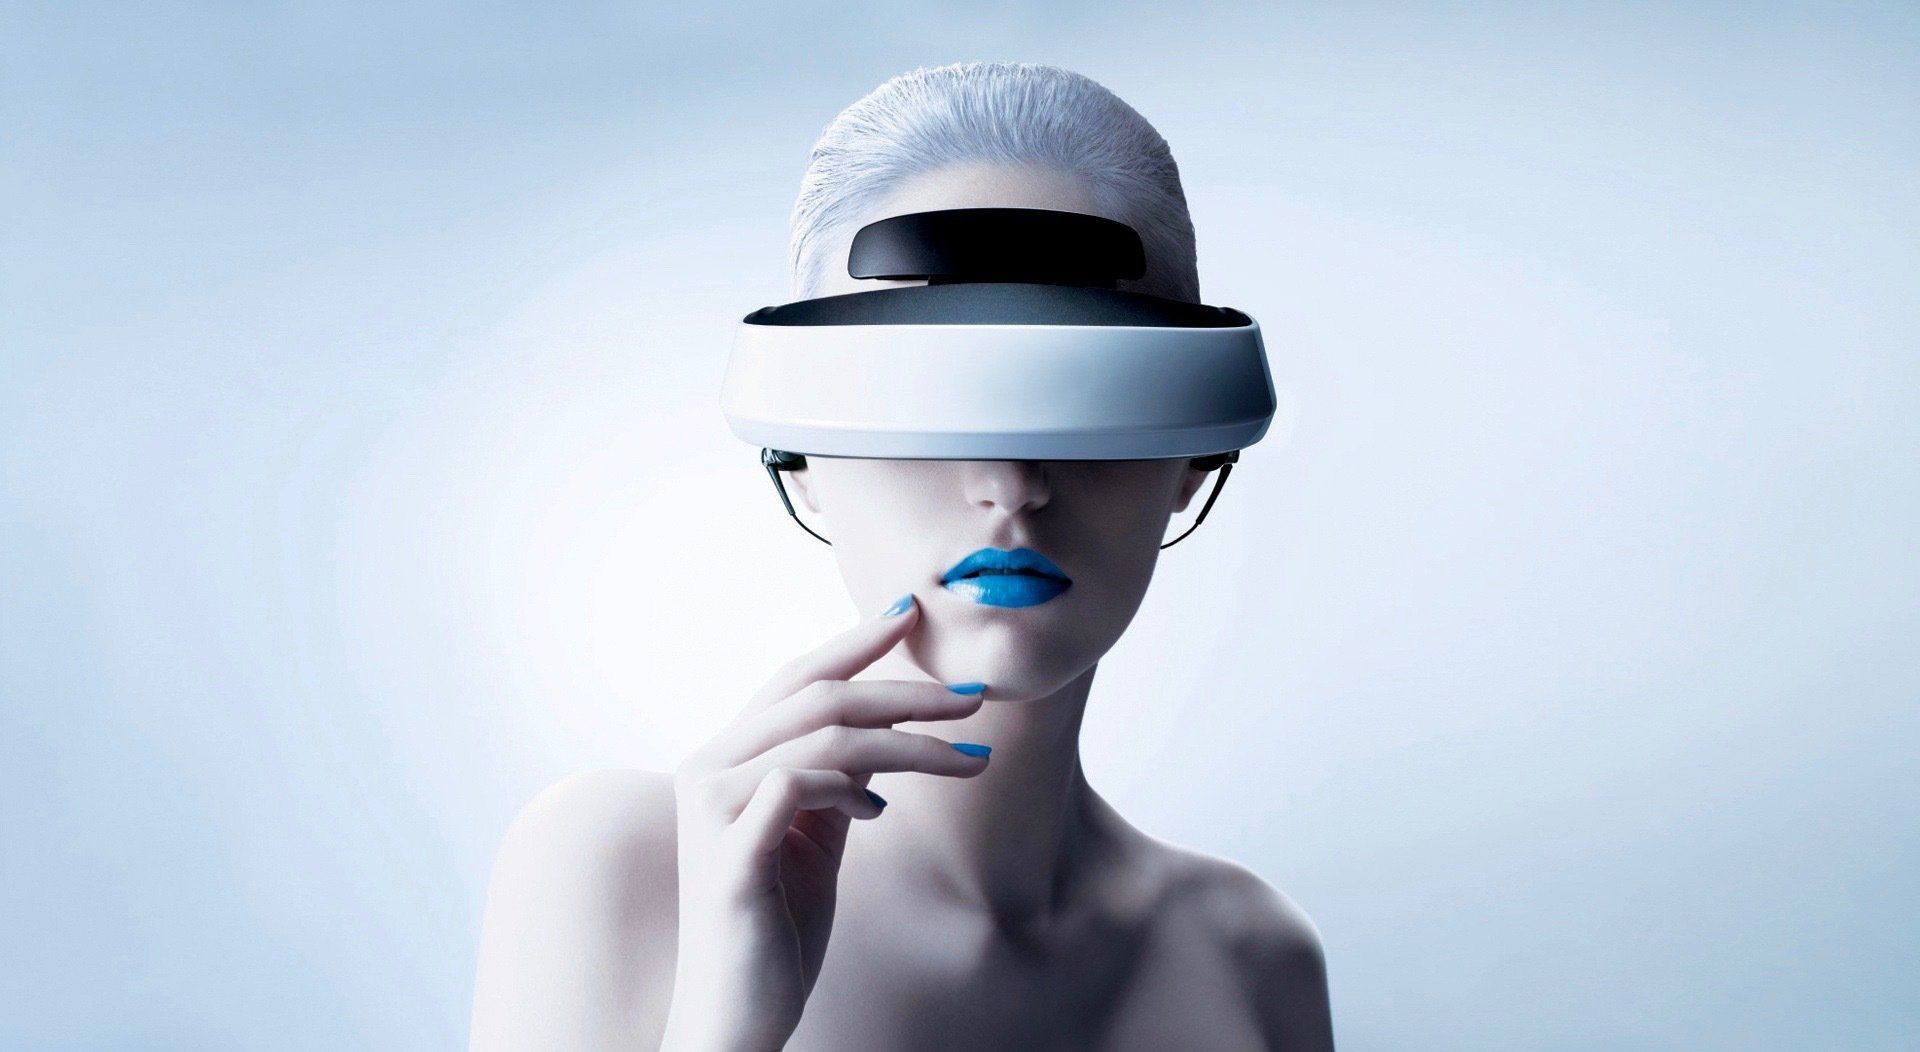 Casques de réalité virtuelle : Oculus Rift, HTC Vive, Playstation VR lequel choisir ?